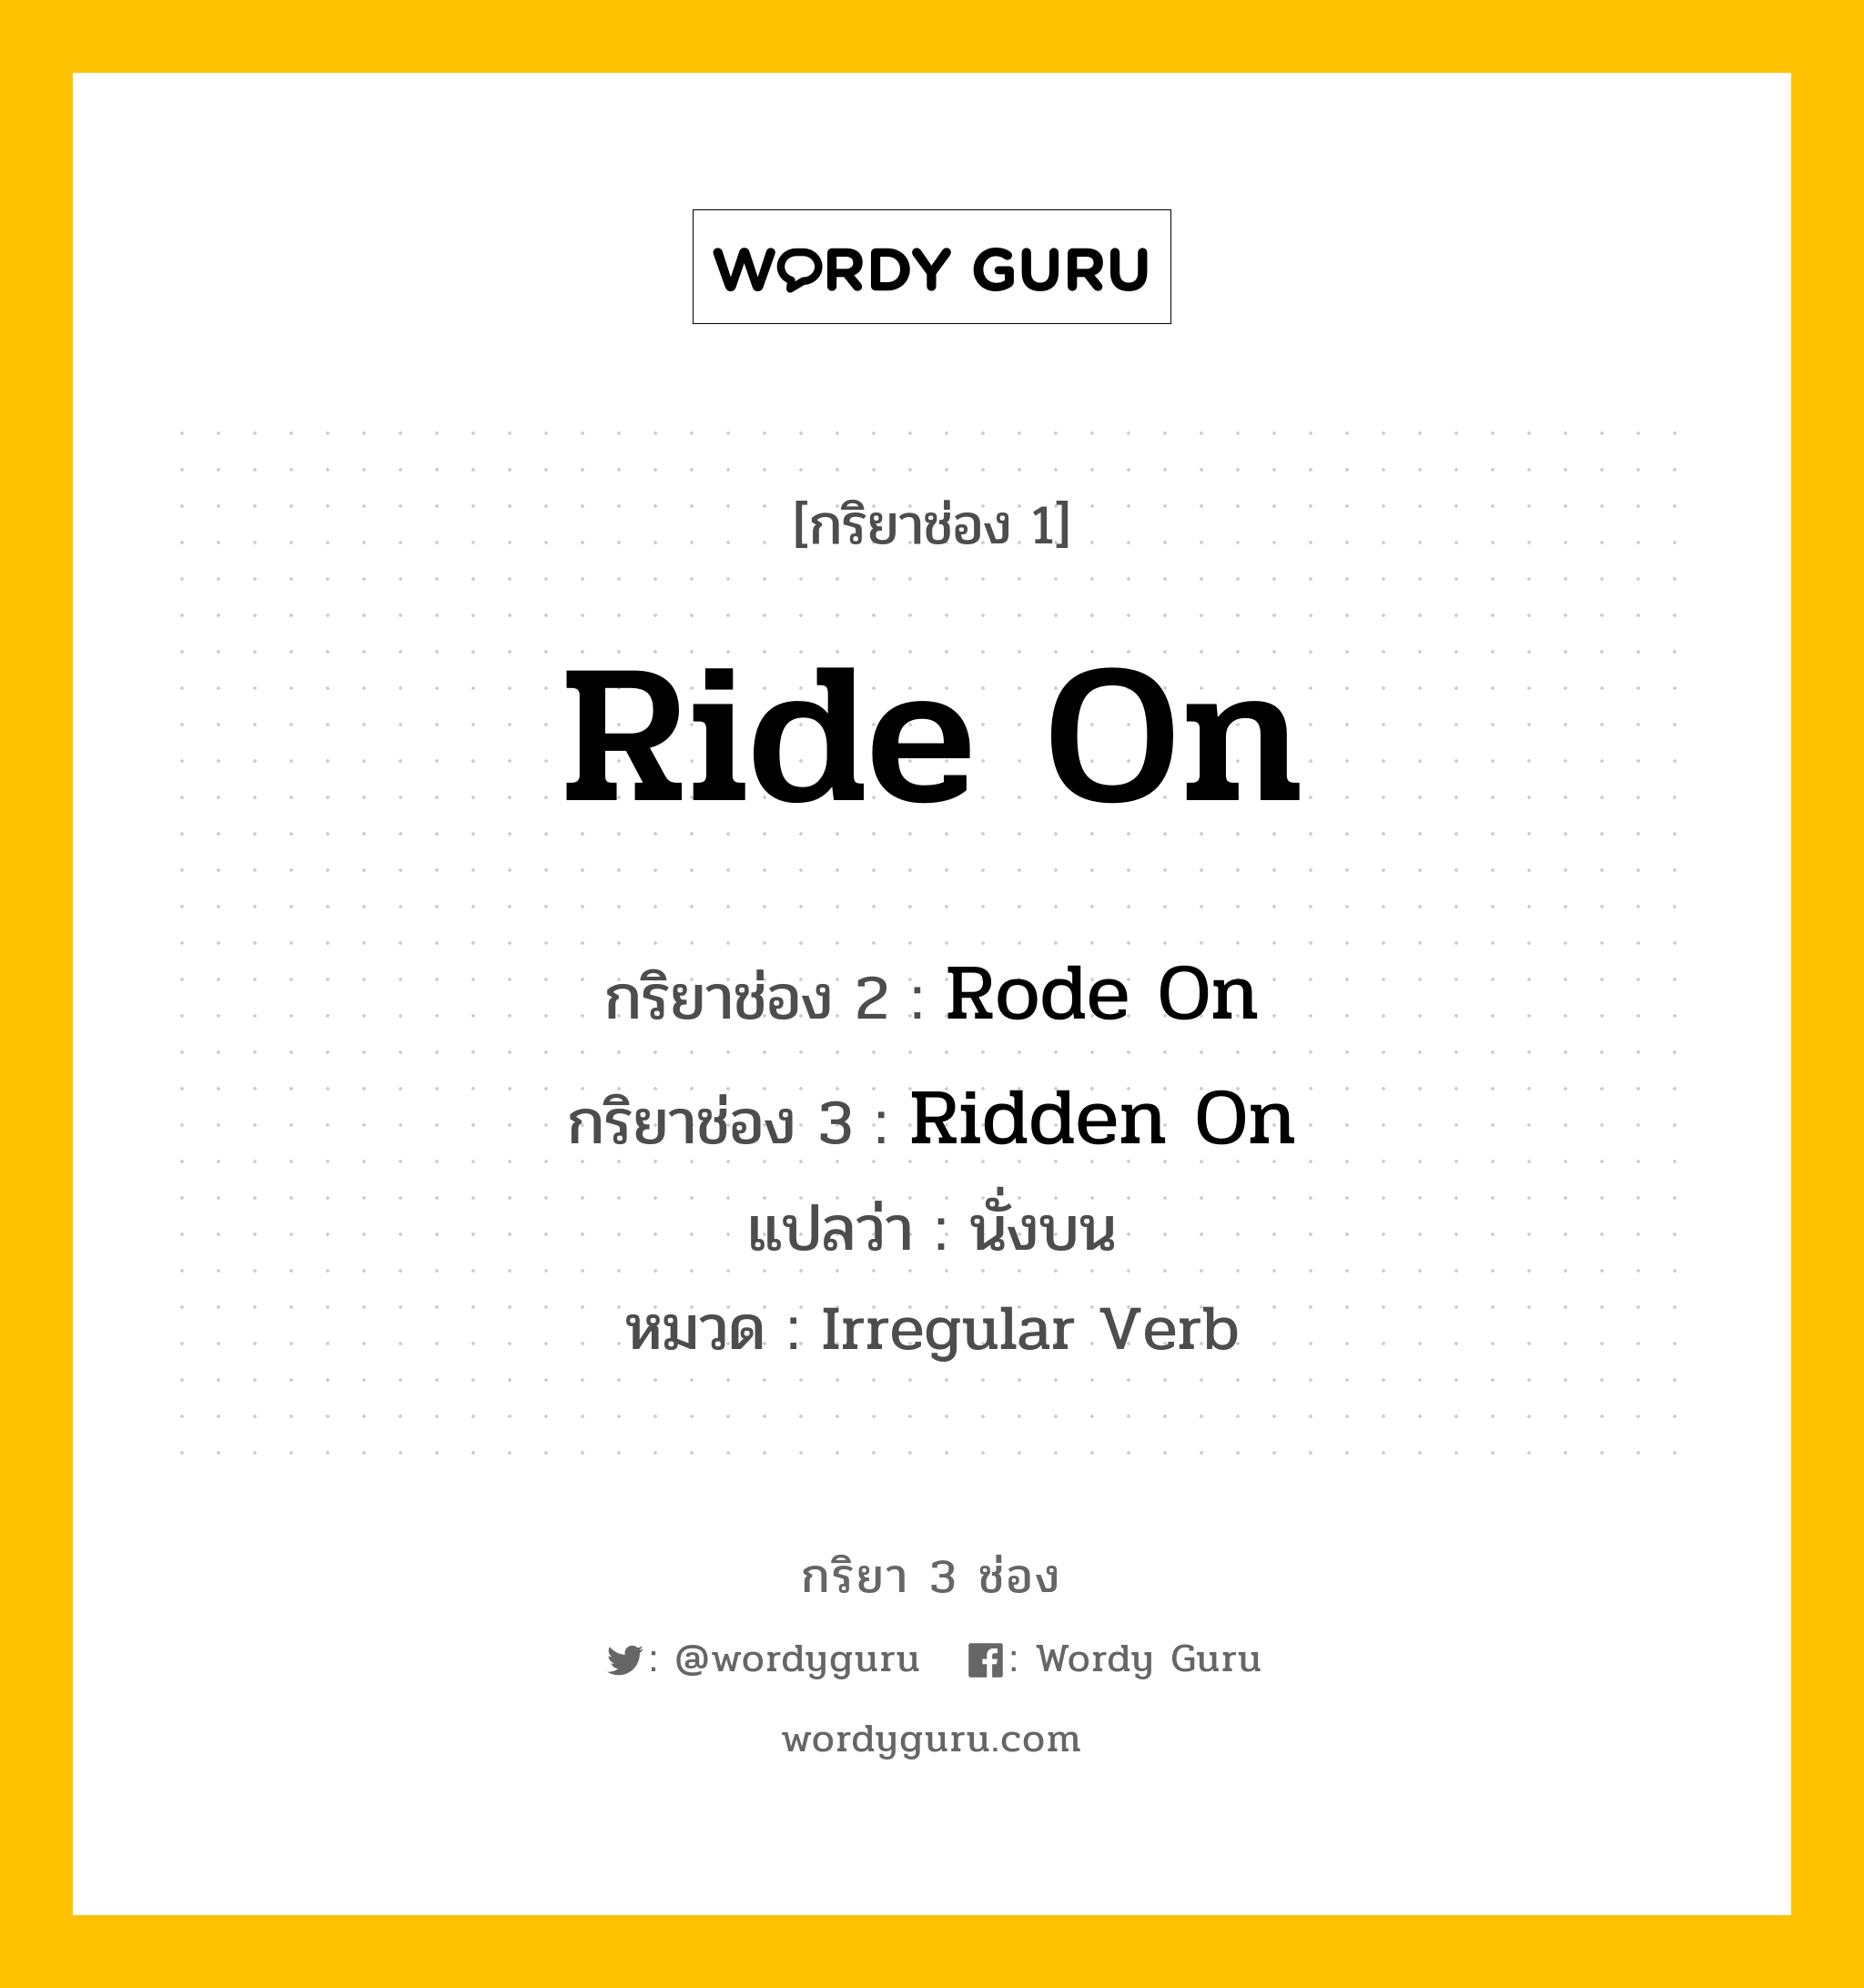 กริยา 3 ช่อง: Ride On ช่อง 2 Ride On ช่อง 3 คืออะไร, กริยาช่อง 1 Ride On กริยาช่อง 2 Rode On กริยาช่อง 3 Ridden On แปลว่า นั่งบน หมวด Irregular Verb หมวด Irregular Verb